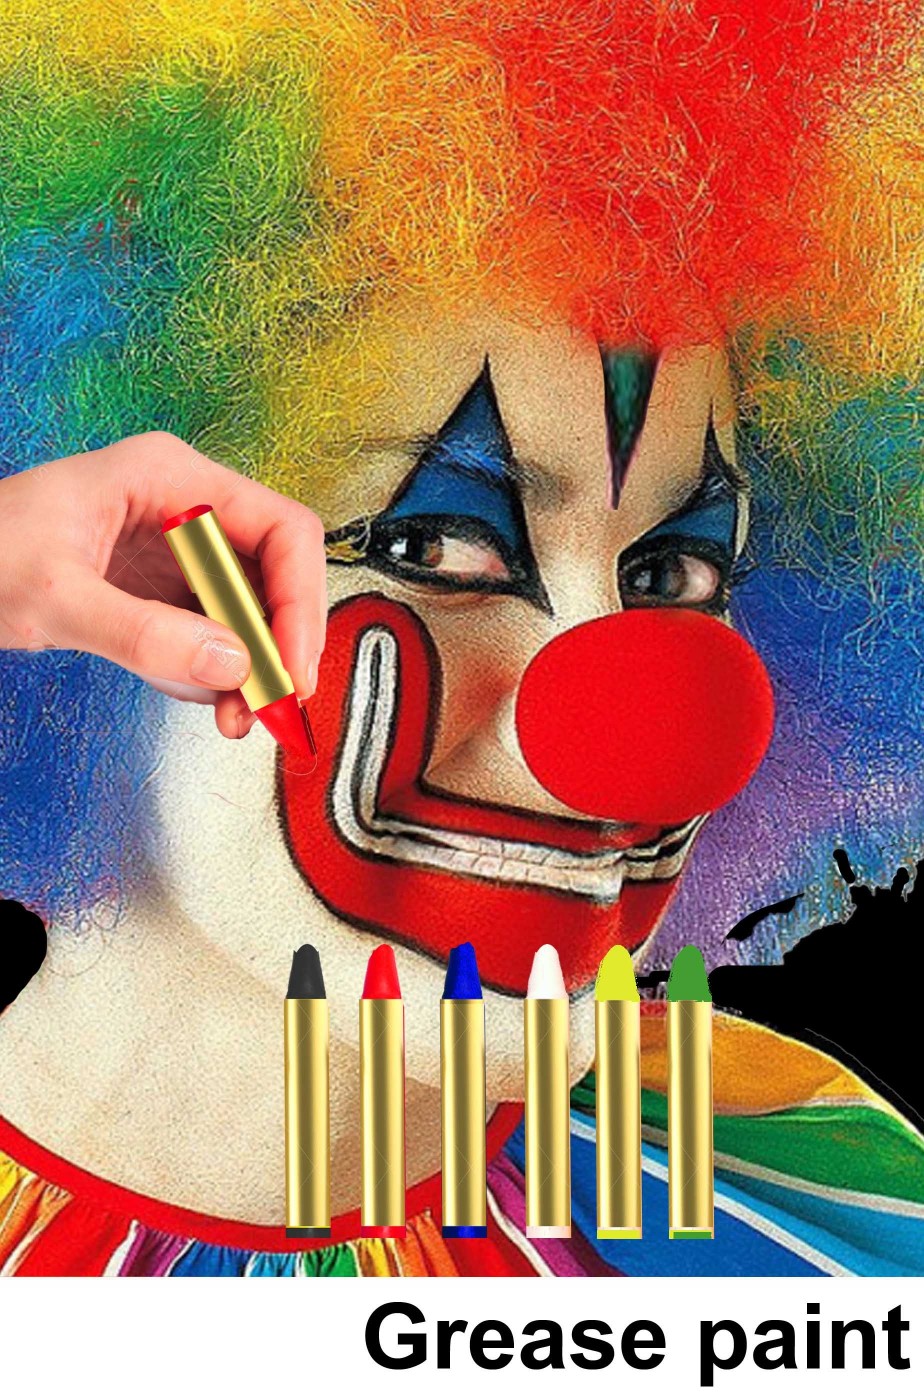 Trucco di carnevale scatola di matite colorate clown pagliaccio